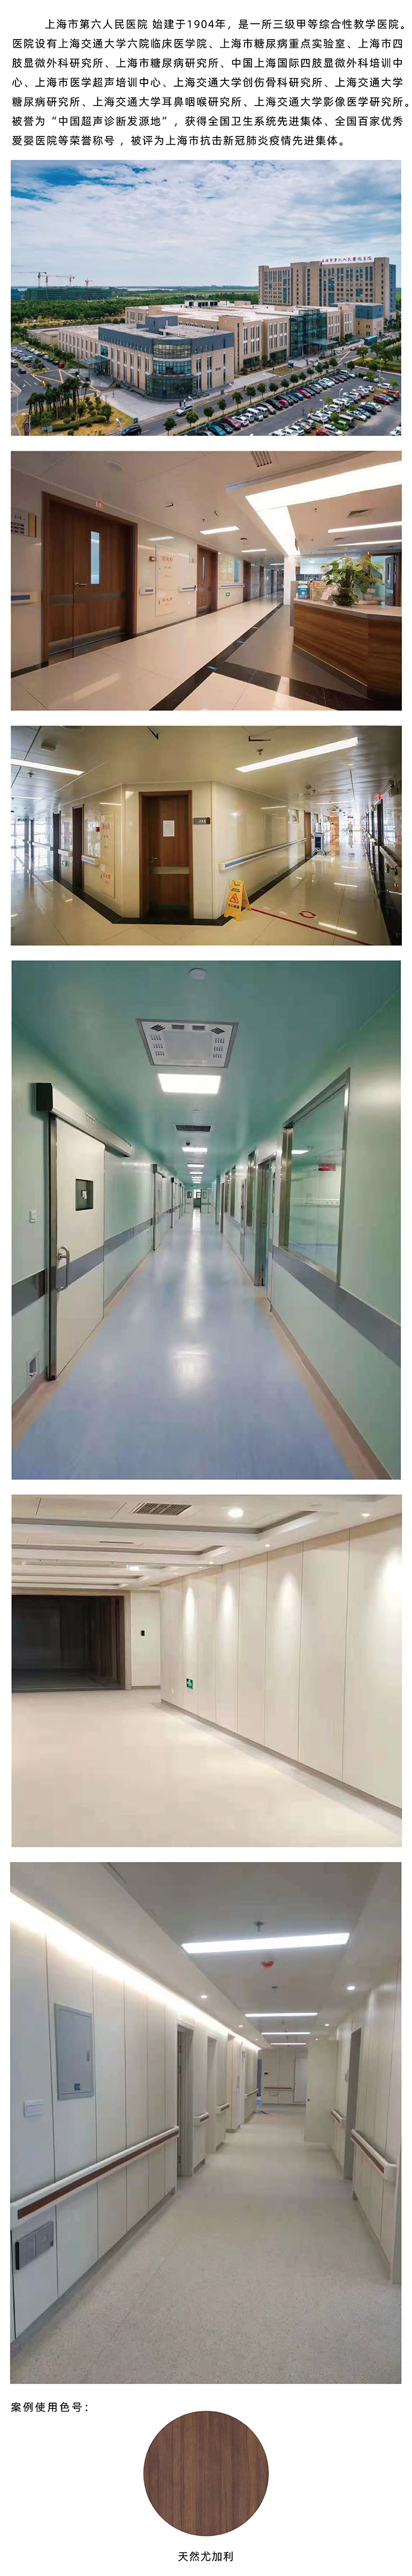 上海第六人民医院医用墙板系统